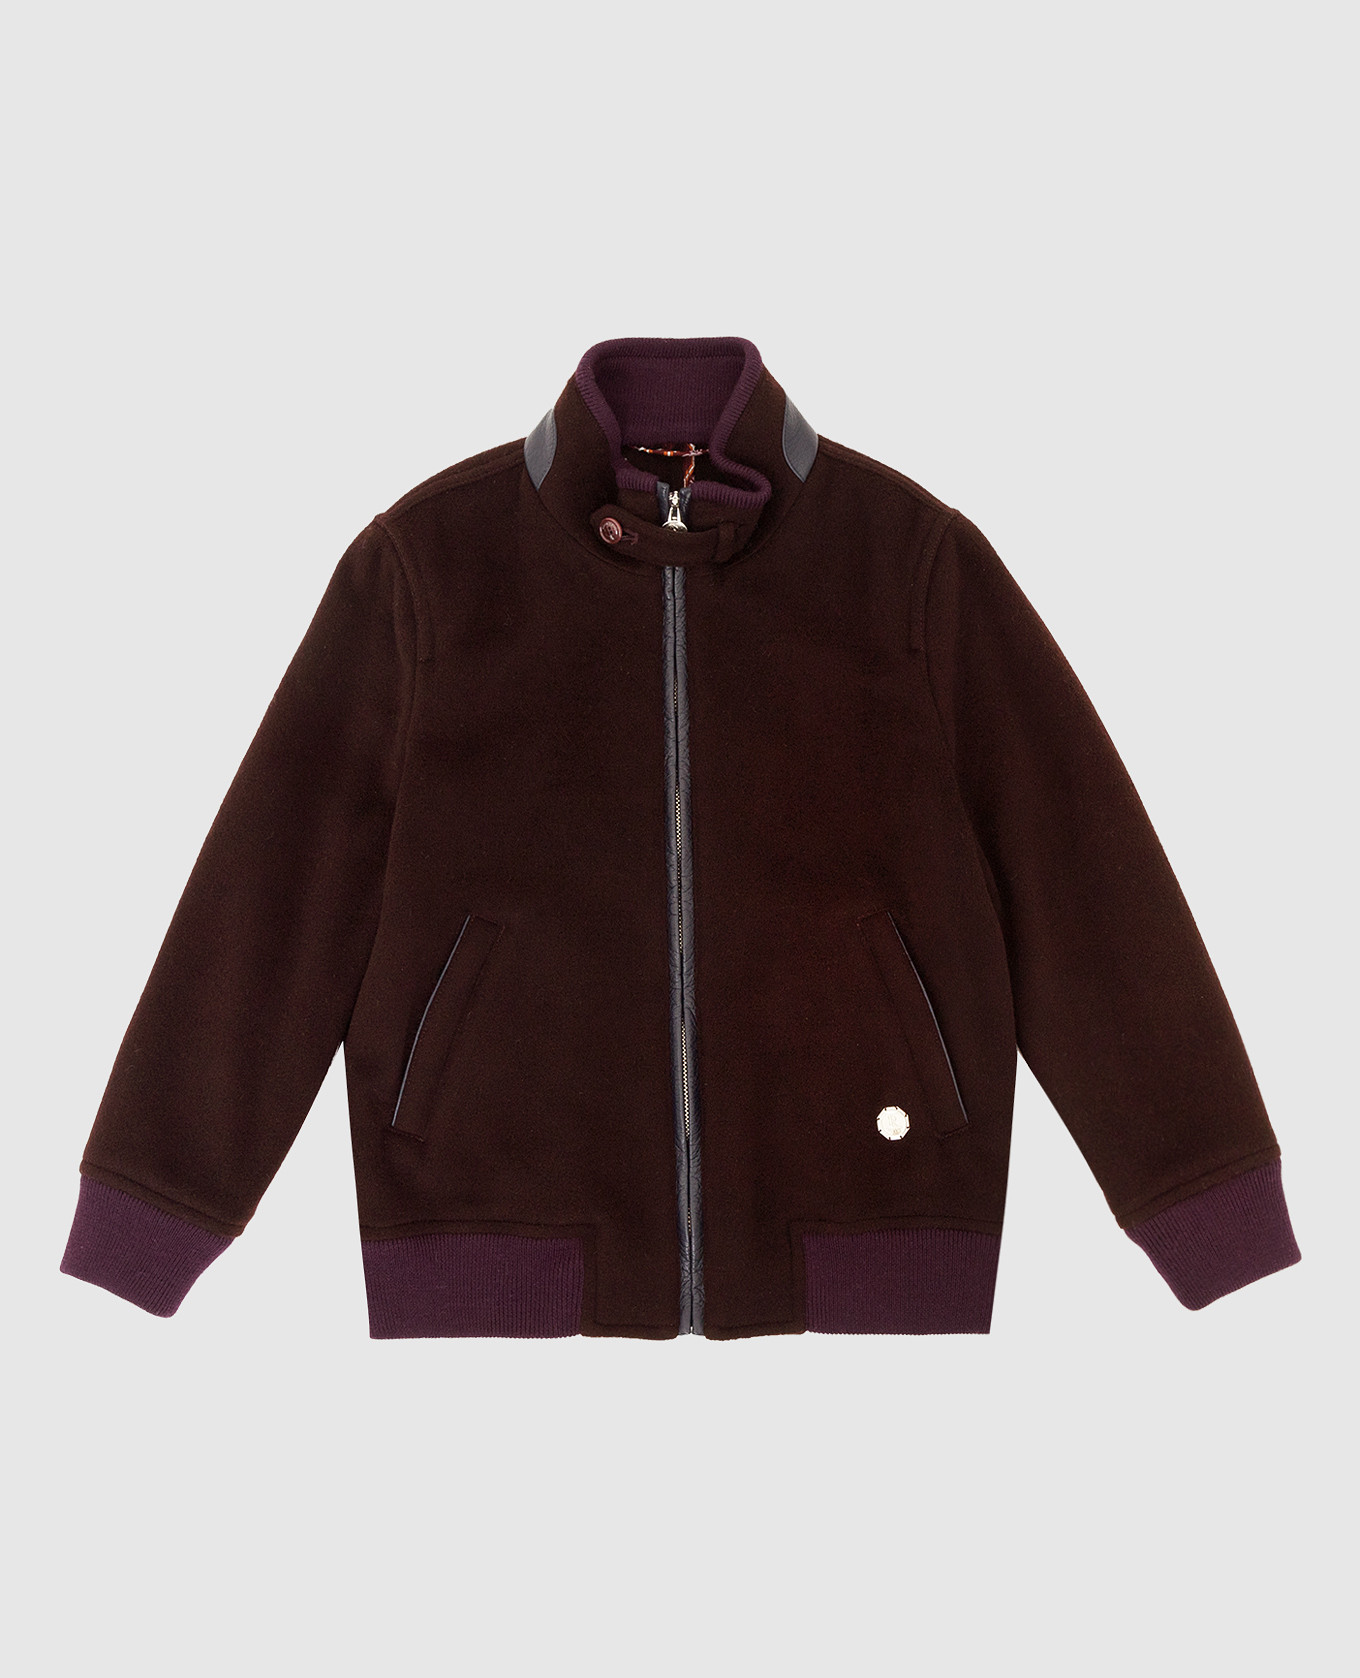 Children's dark brown cashmere jacket